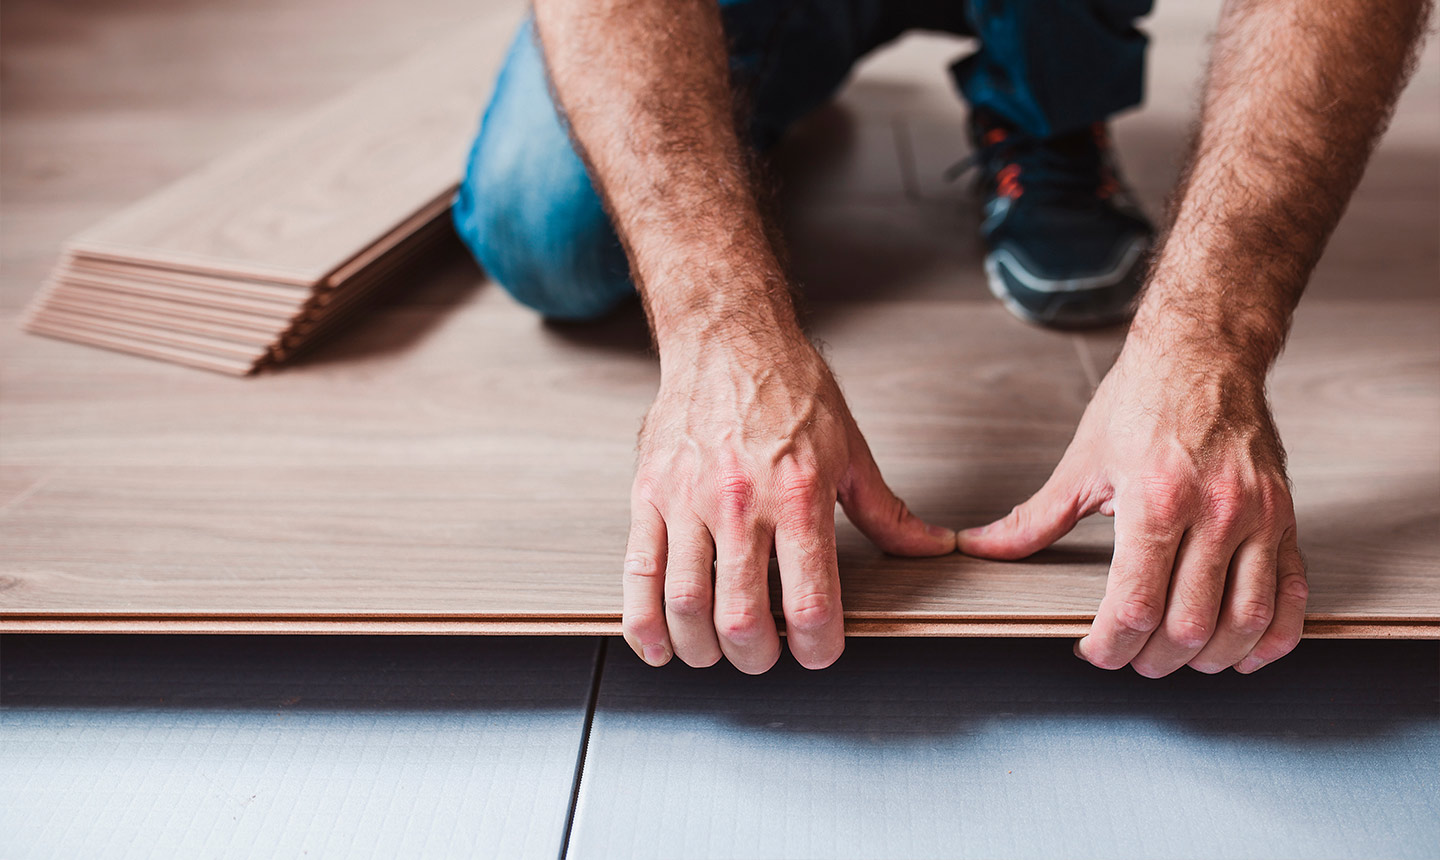 Repair your laminate flooring with ALEX!